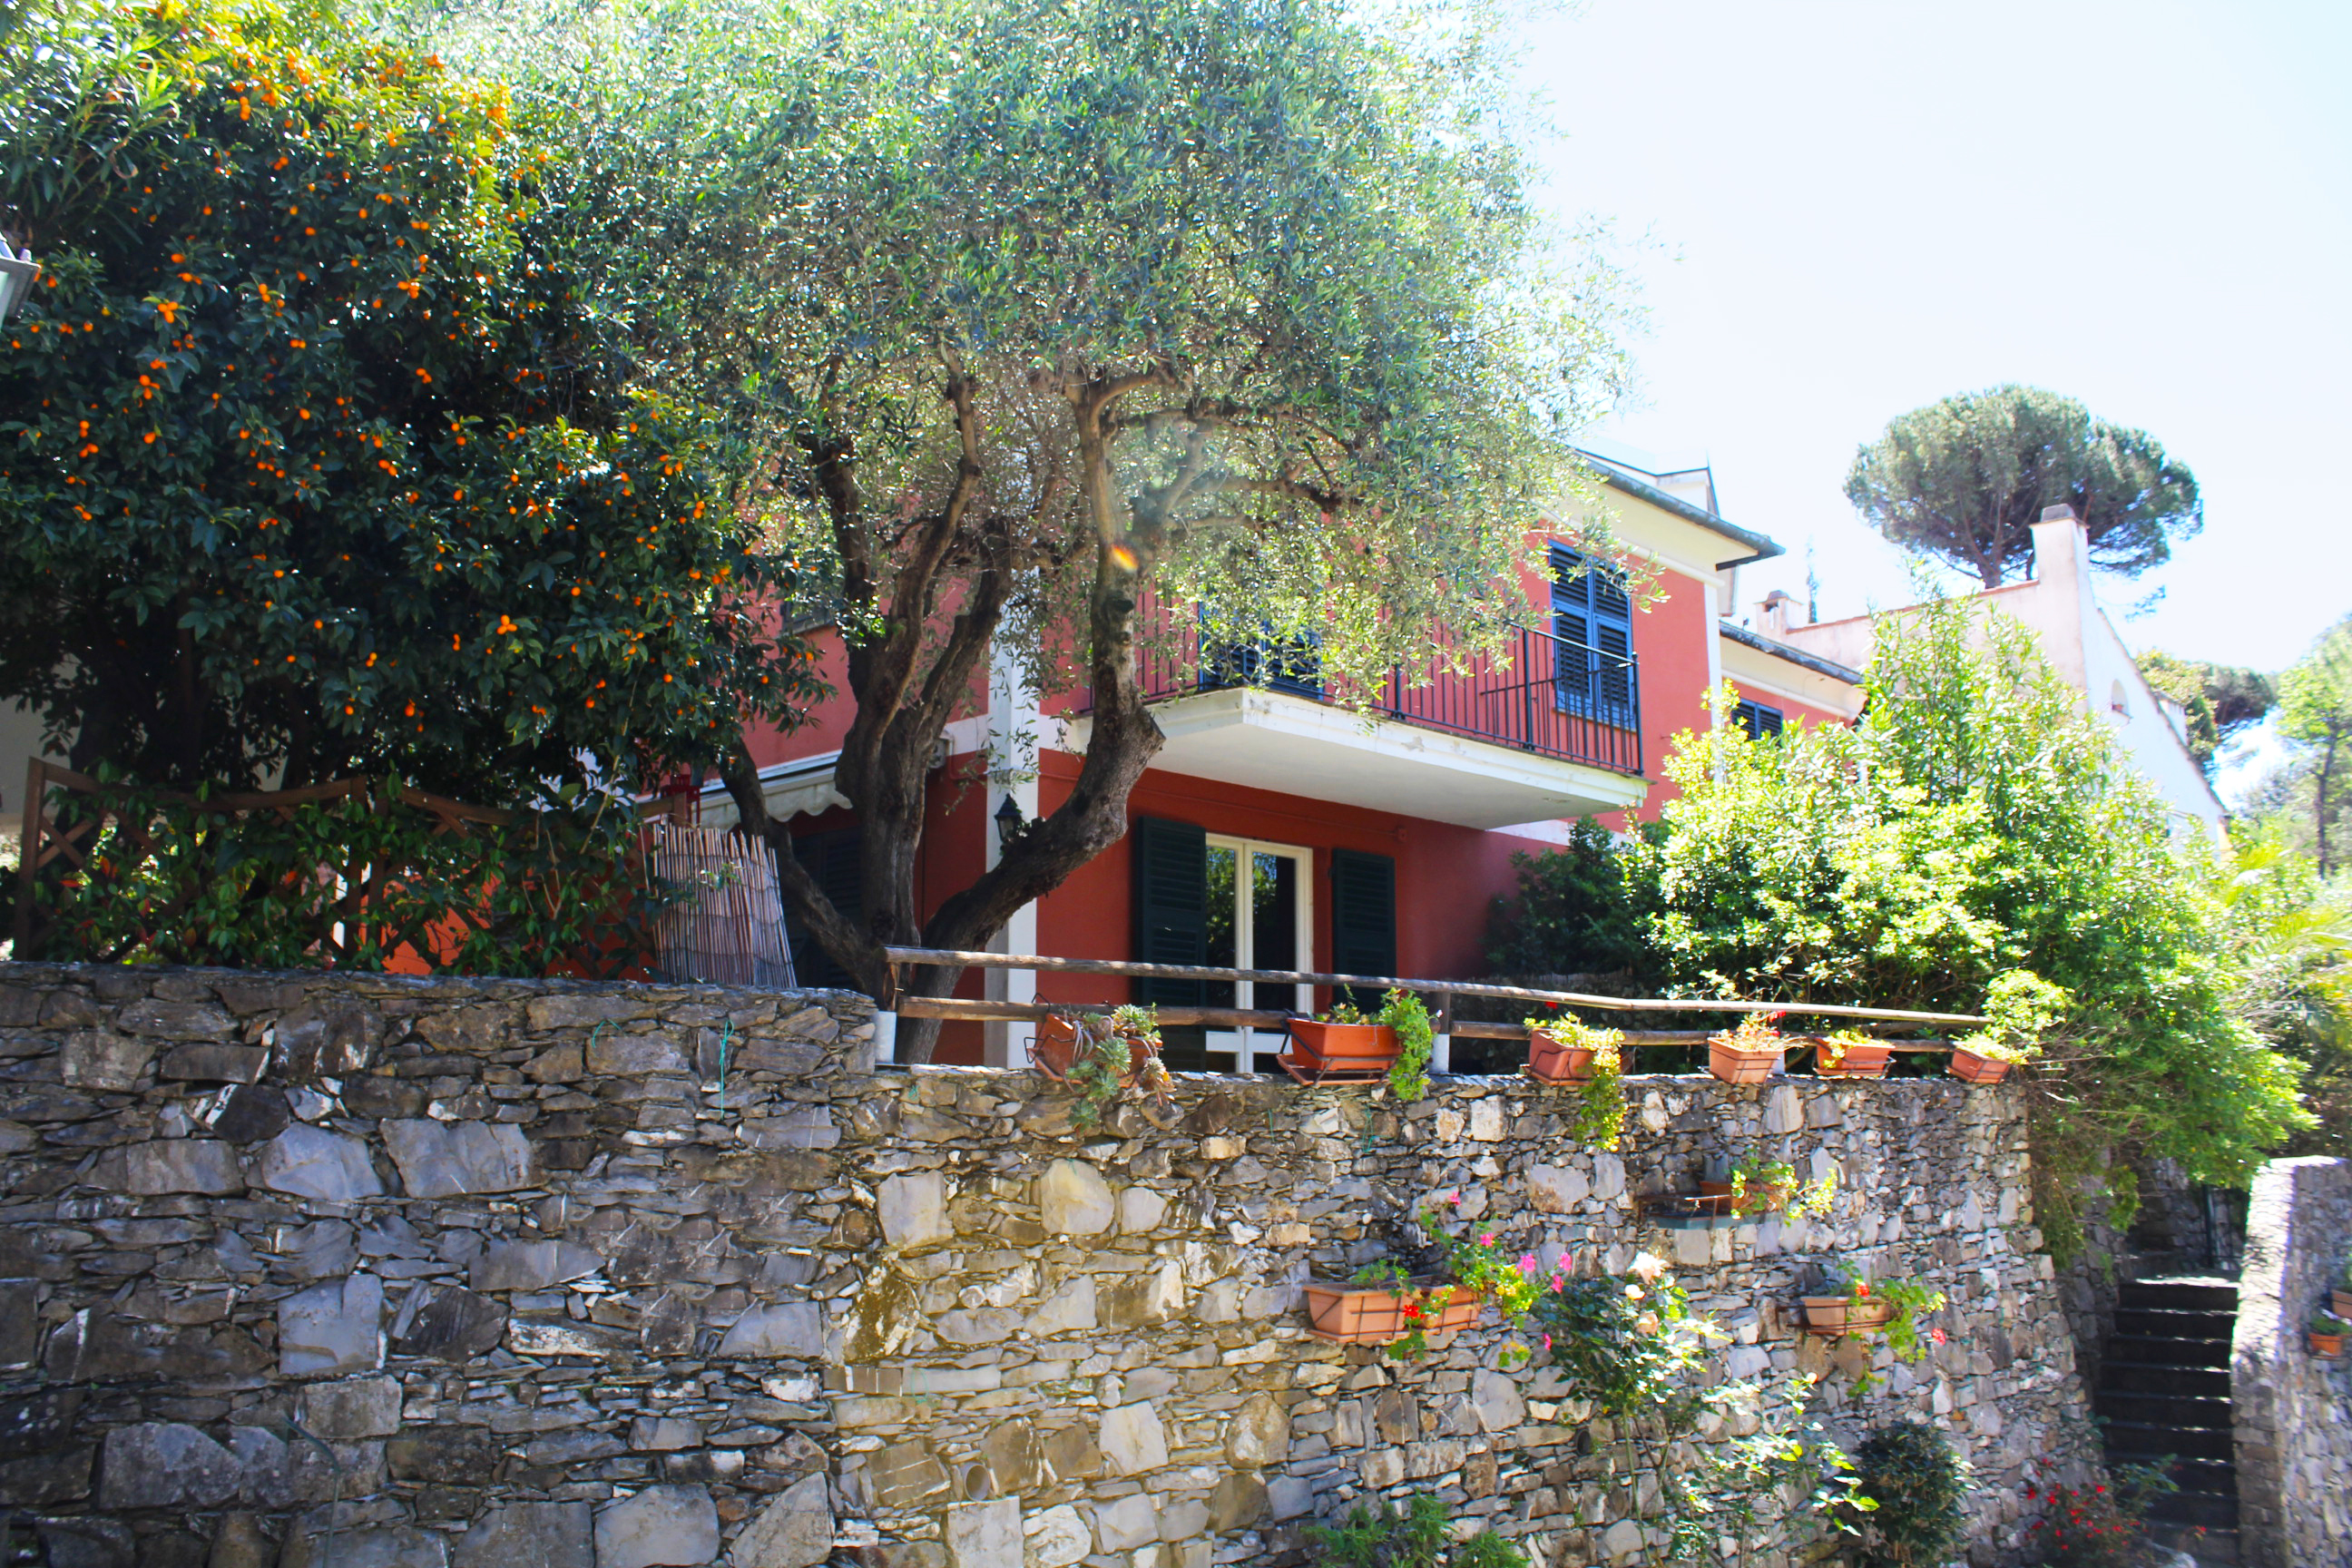 Graziosissimo appartamento con giardino privato - Via Primavera, Zoagli Genova